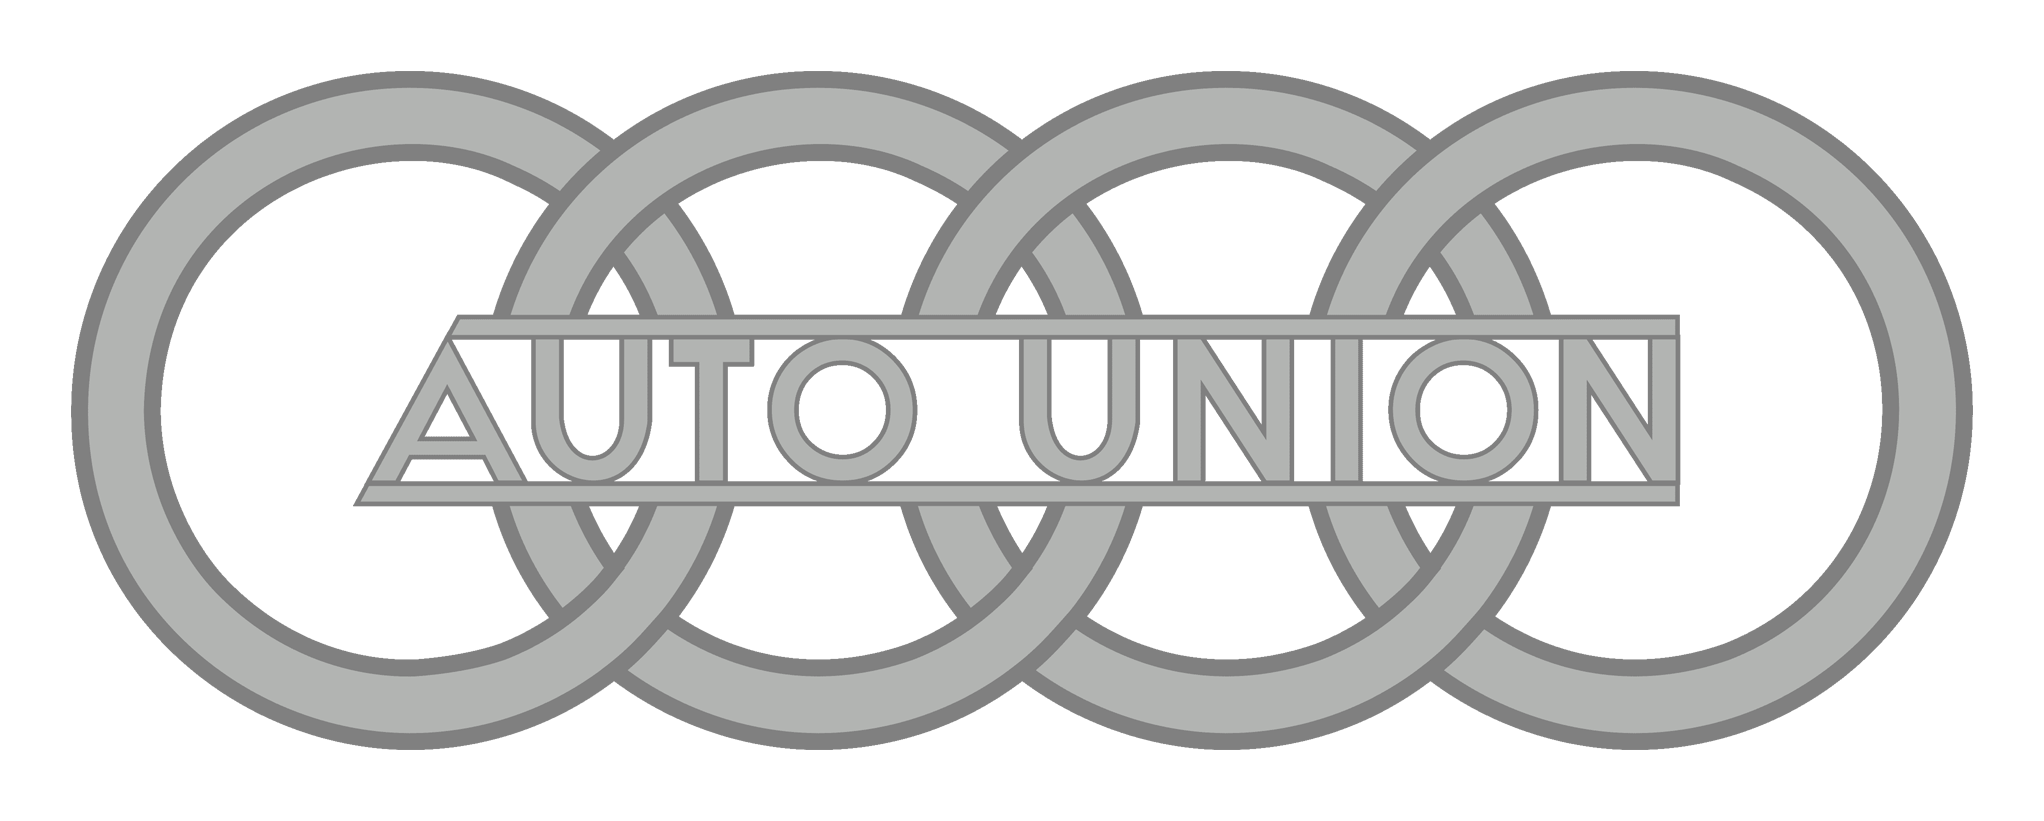 Audi logo  Car logos, Audi cars, Car logos with names